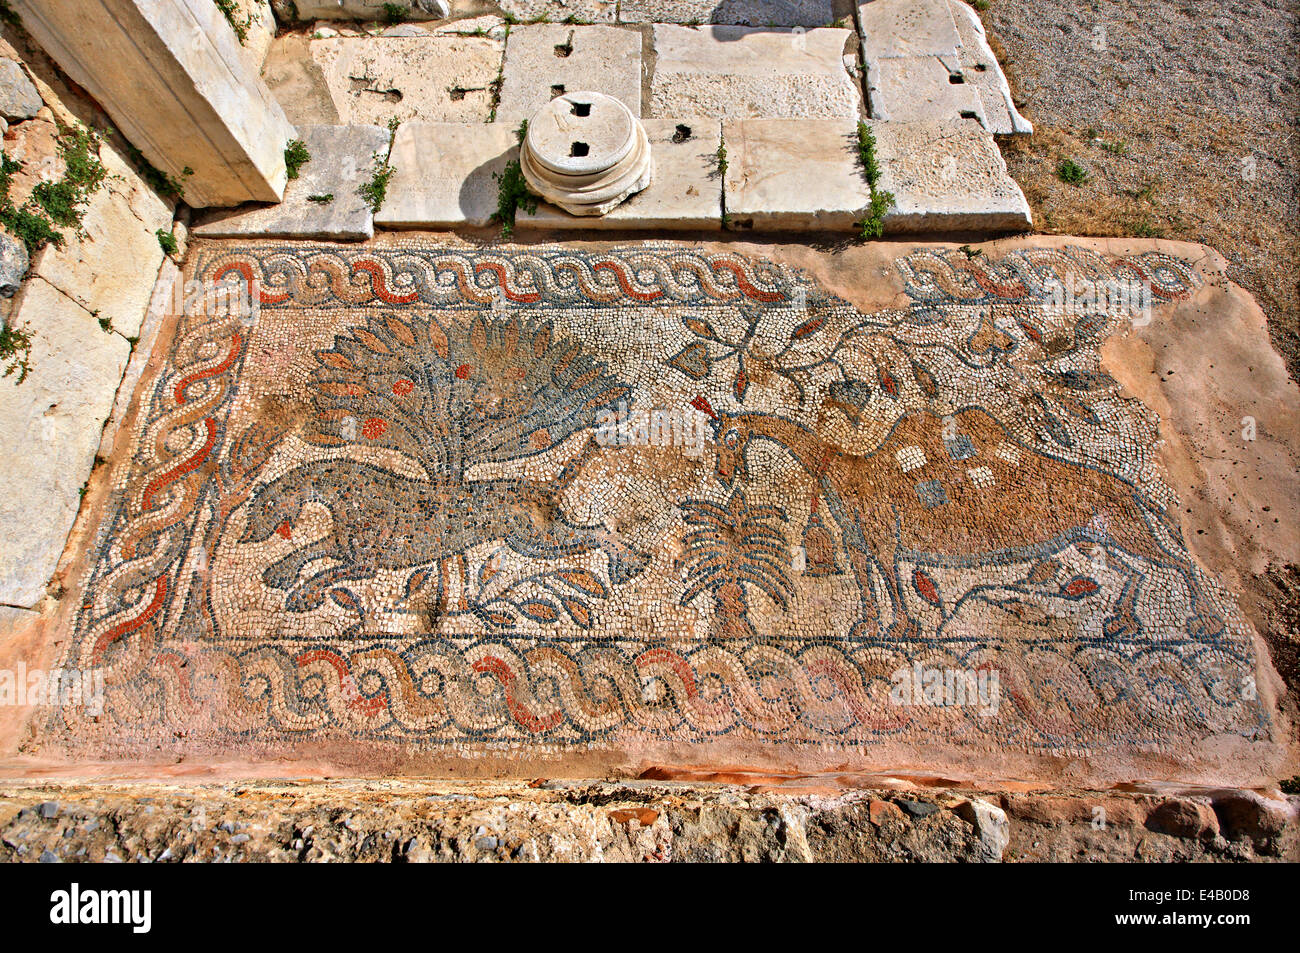 Mosaici presso la Basilica paleocristiana di Gesù Cristo di Gerusalemme, Kalymnos island, Dodecaneso, Mar Egeo, Grecia. Foto Stock